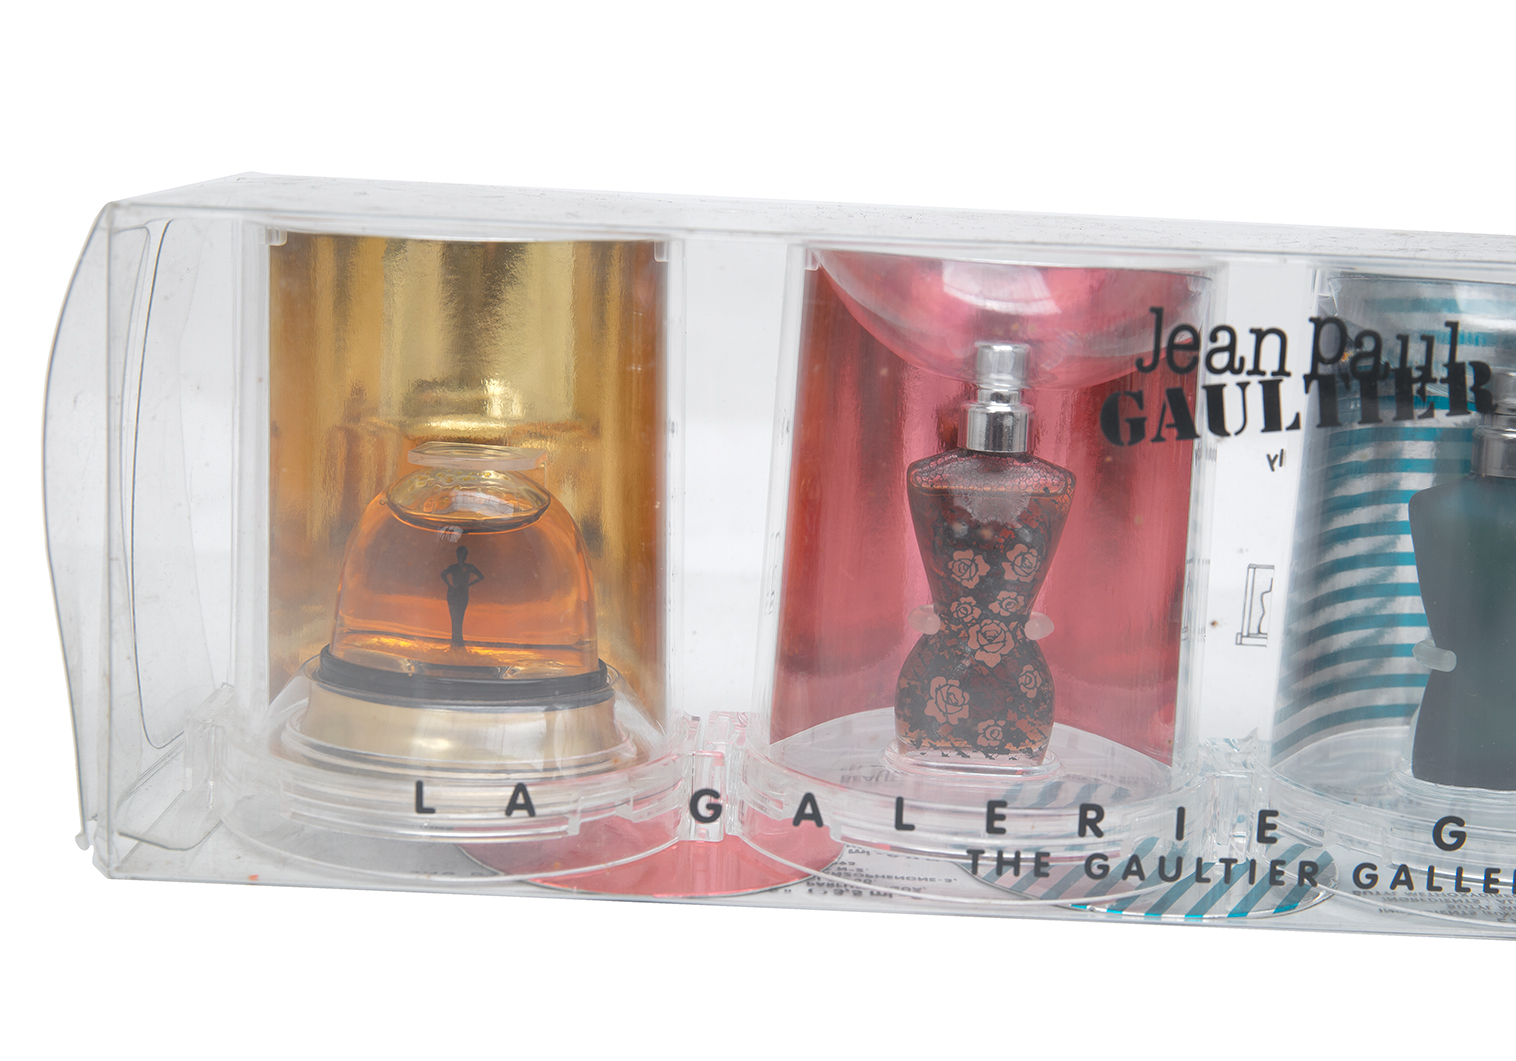 新品 ジャンポール ゴルチェ クラシック Xコレクションセット 香水